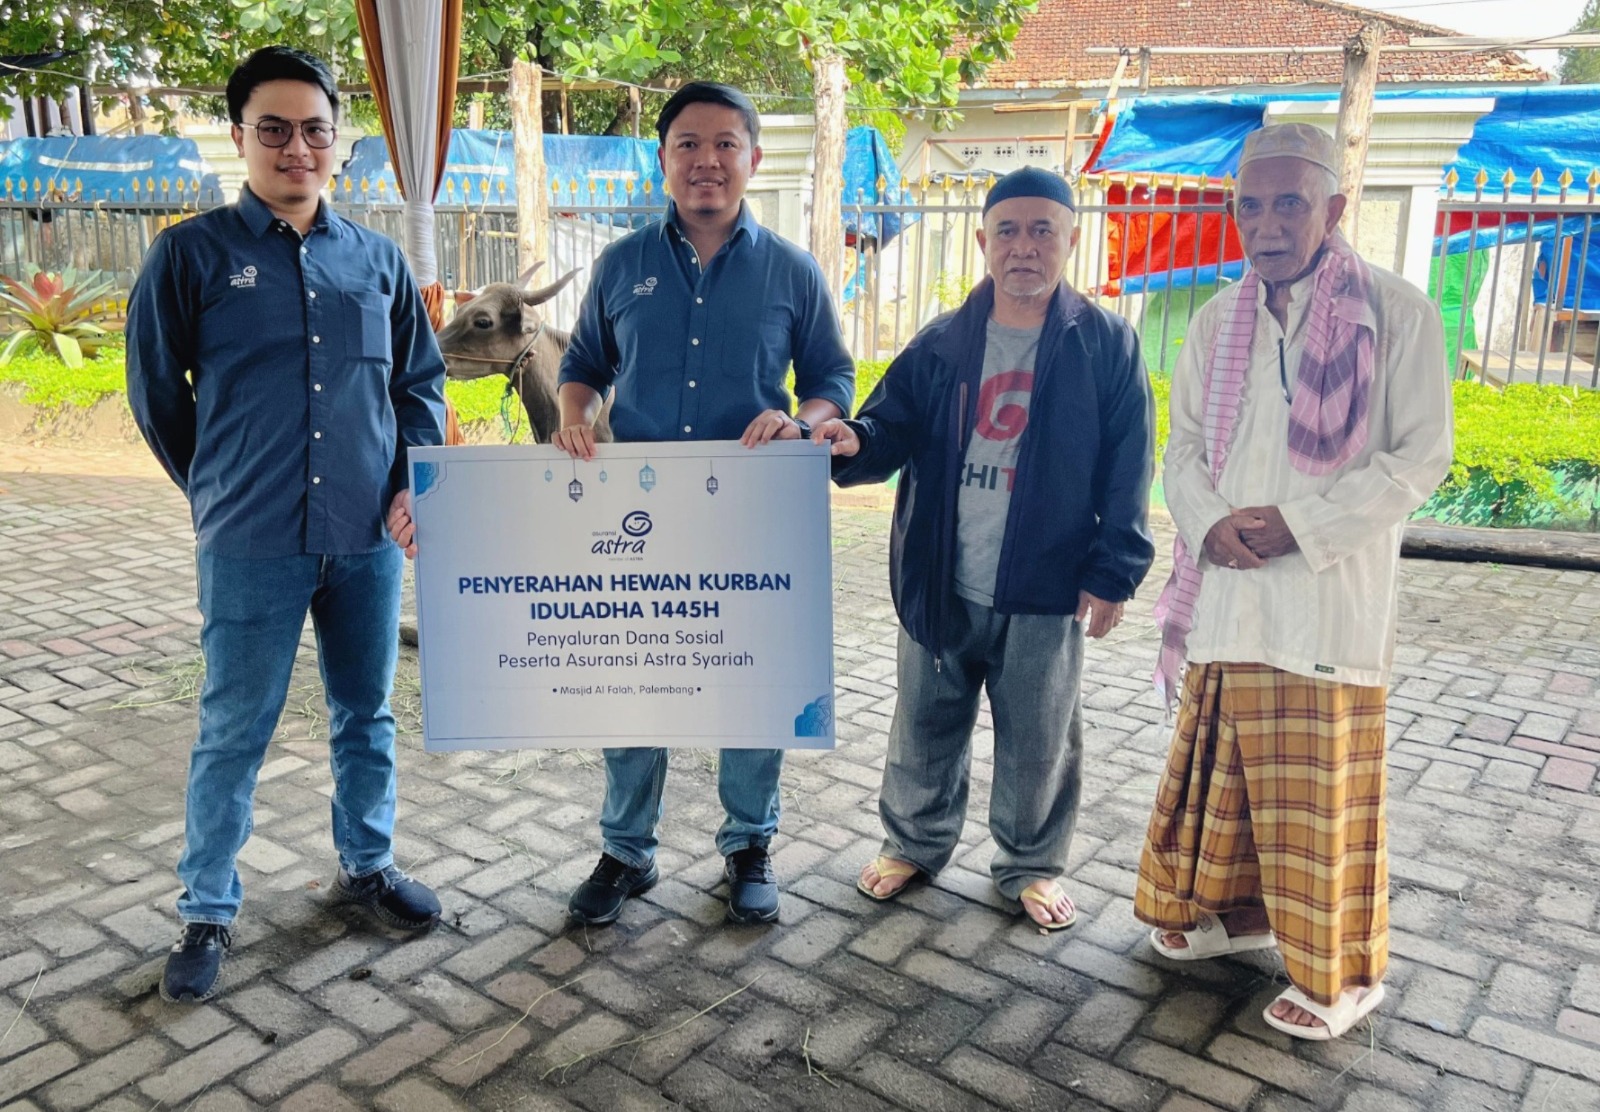 Asuransi Astra Buana Palembang Salurkan Sapi Kurban ke Masjid Al Falah, Serentak di 12 Kota di Indonesia